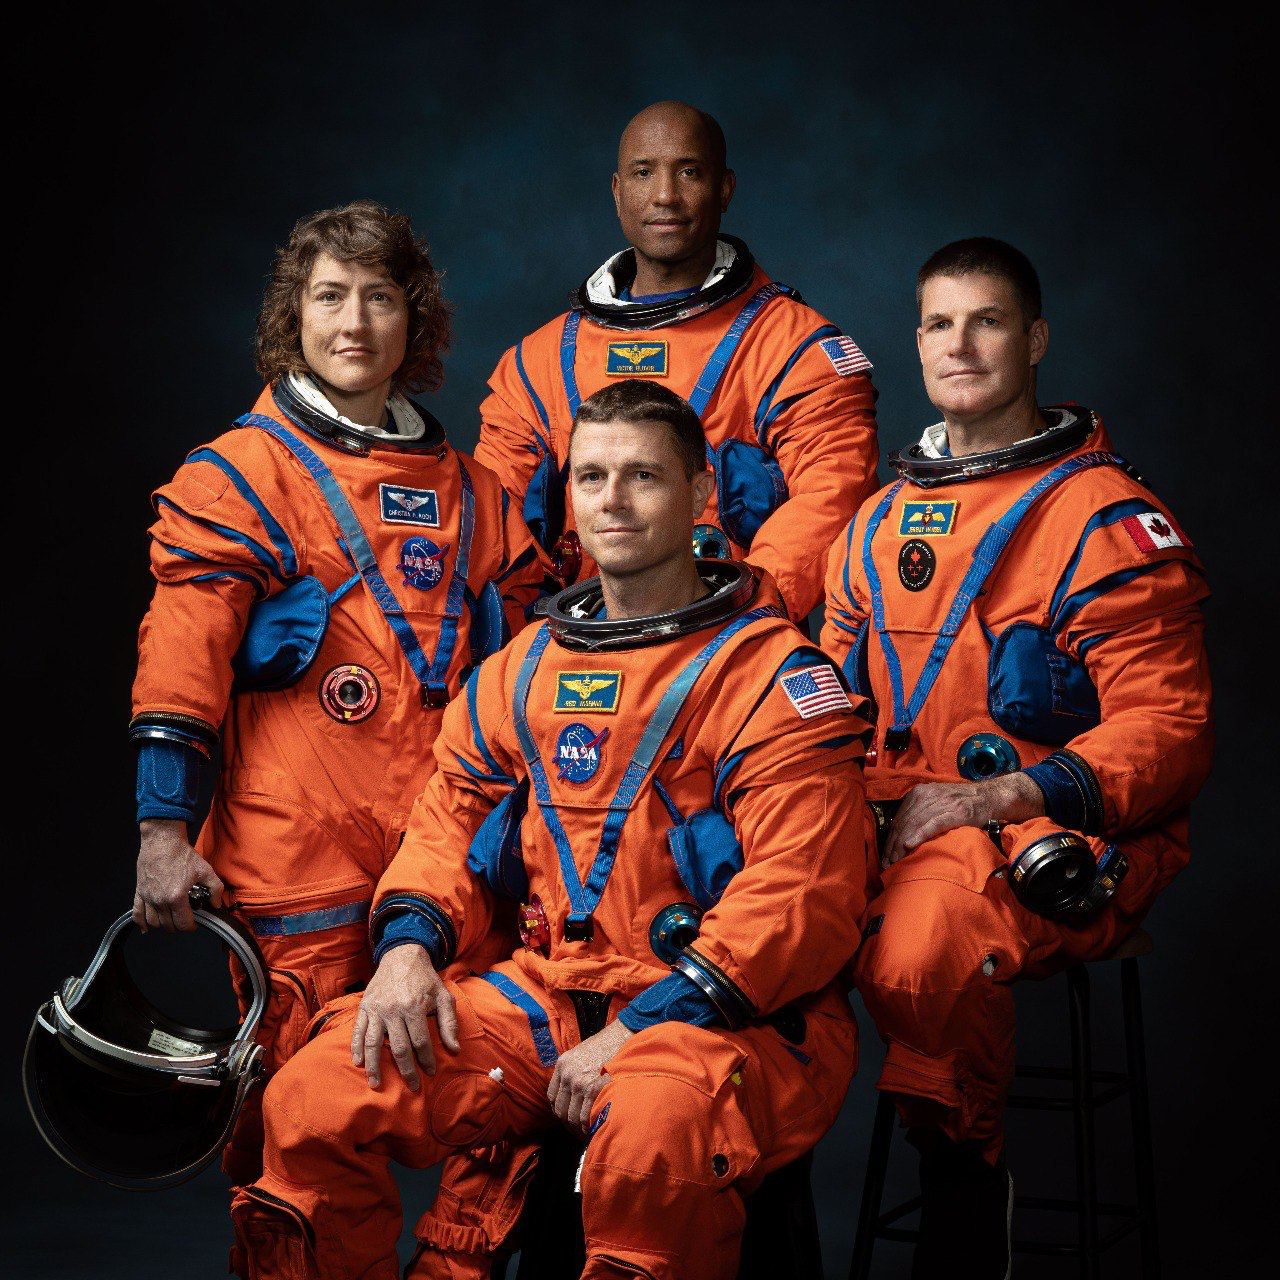 Назначены четверо астронавтов, которые облетят Луну в рамках миссии Artemis II